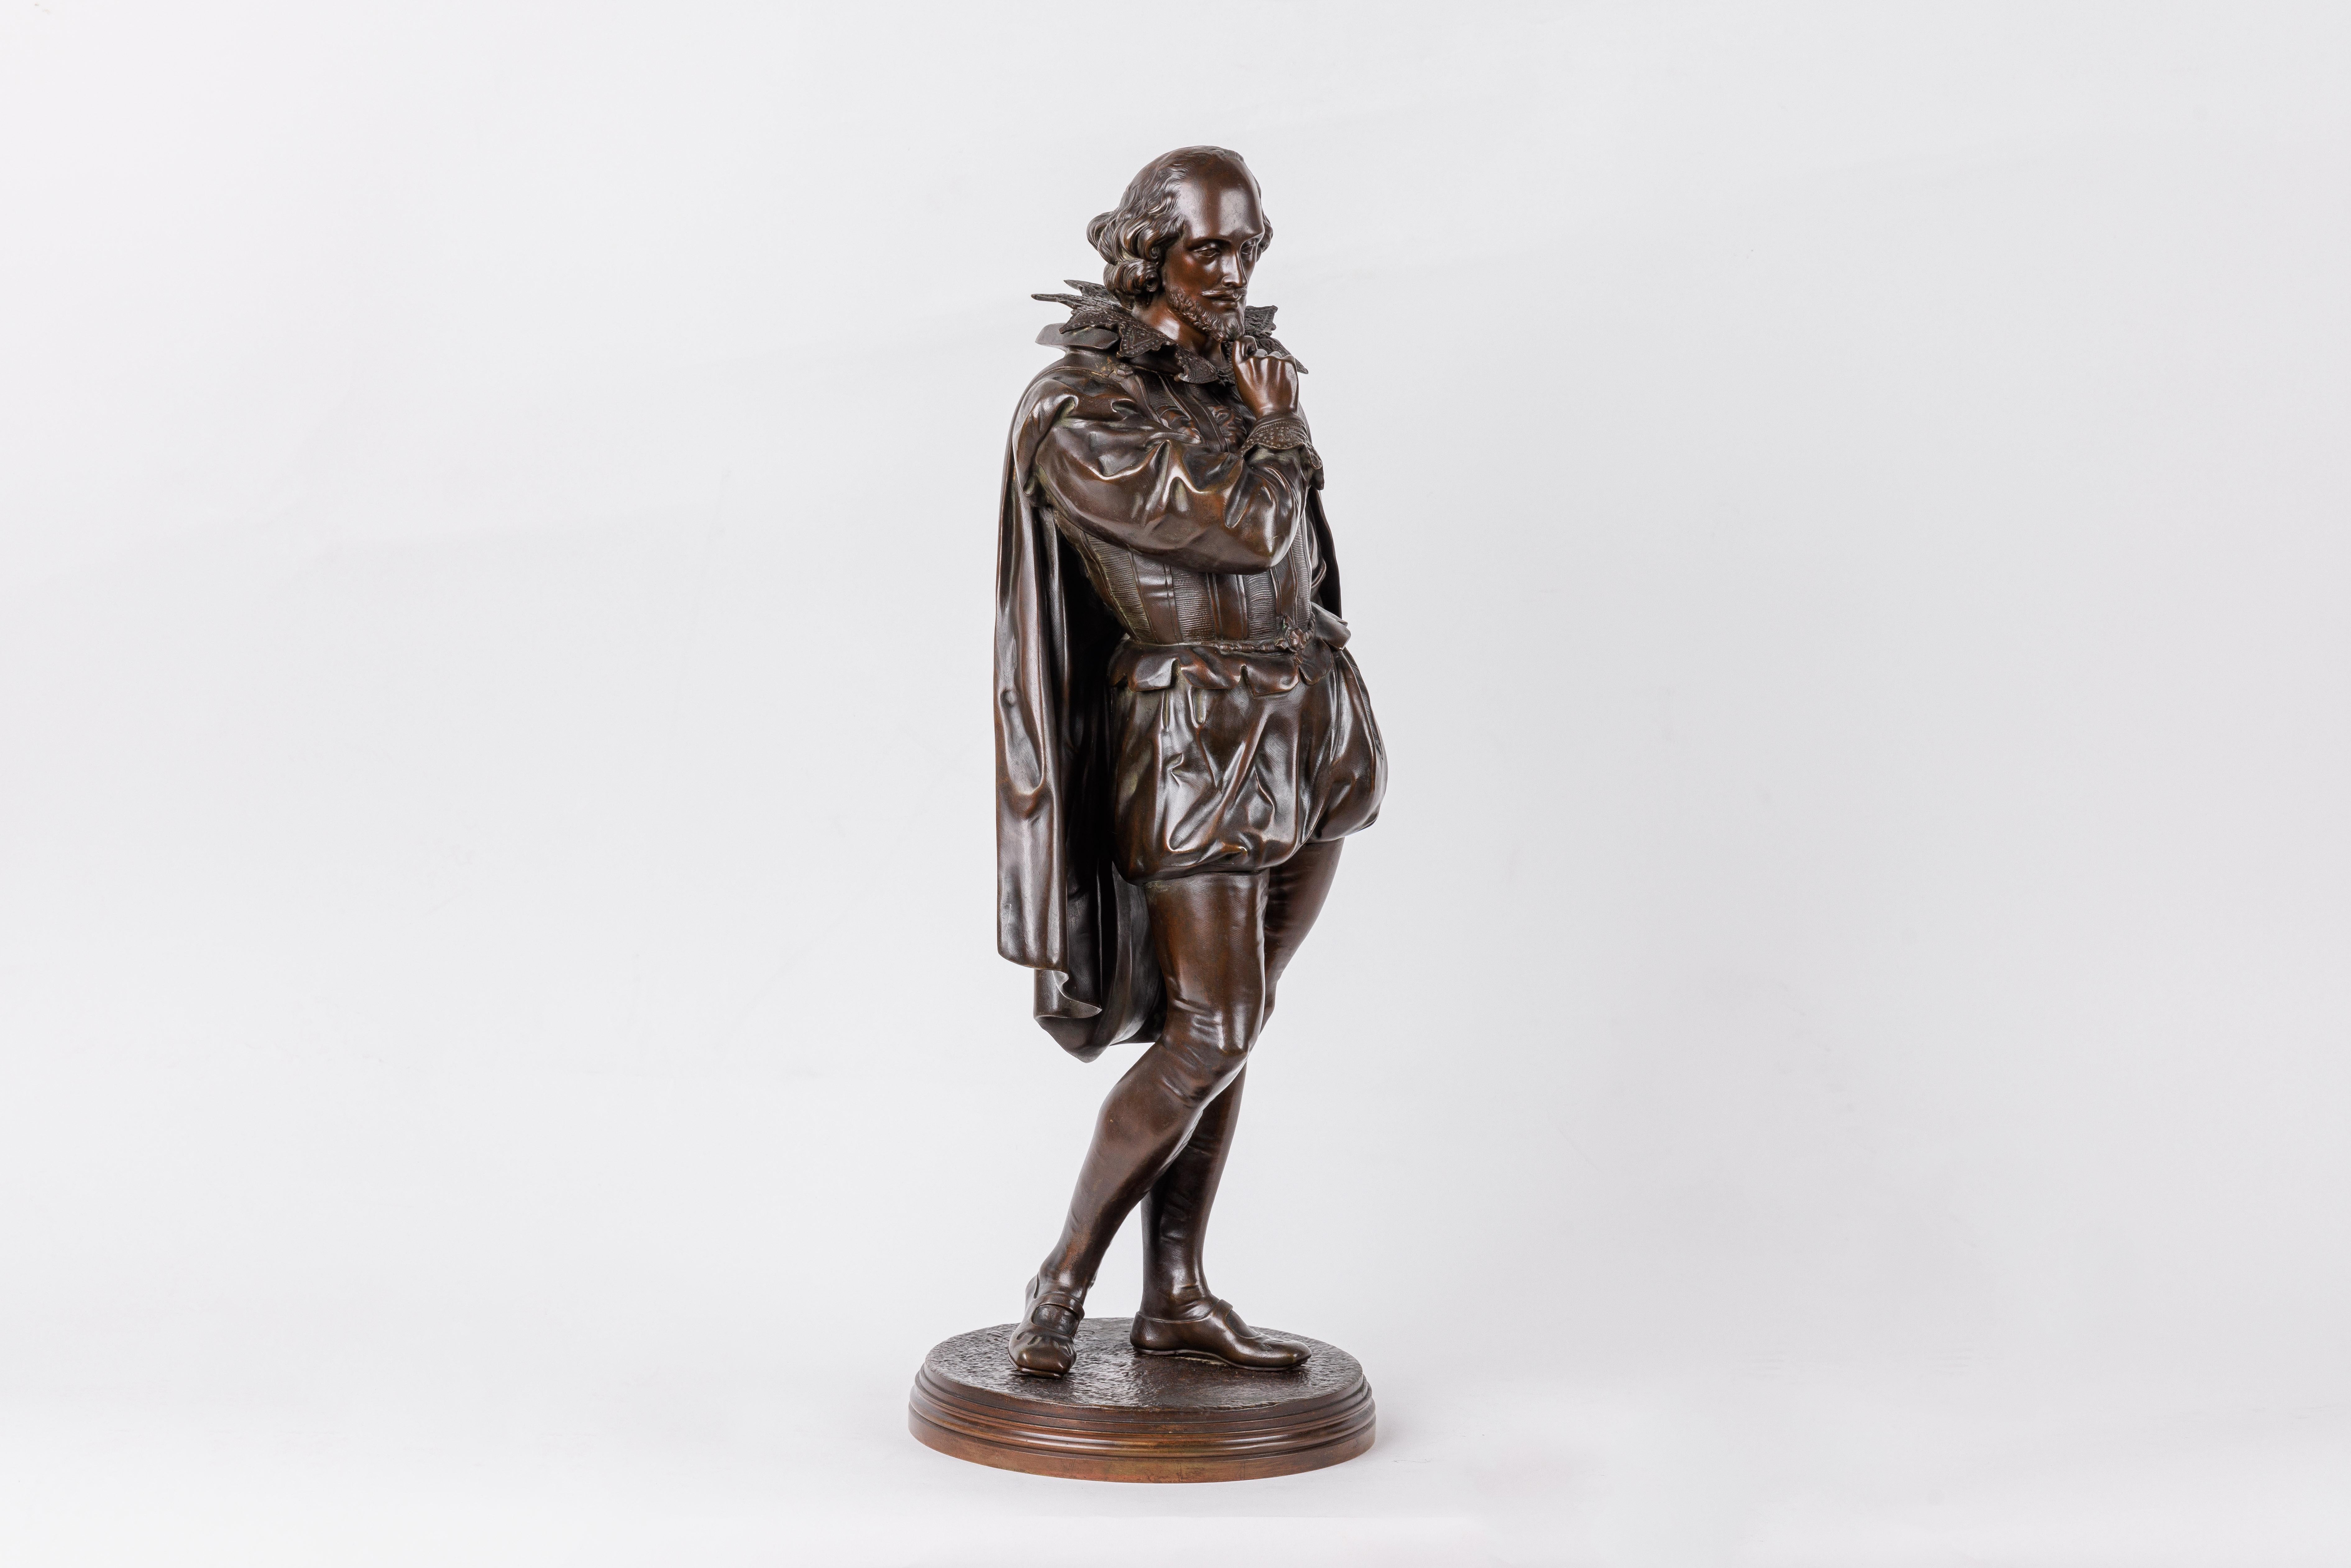 Jean Jules B. Salmson, Eine patinierte Bronzeskulptur von William Shakespeare, 19. Jahrhundert. 

Sehr seltene Skulptur des berühmten William Shakespeare. Eine perfekte Ergänzung für jede Bibliothek oder jedes Herrenbüro.

Unterzeichnet